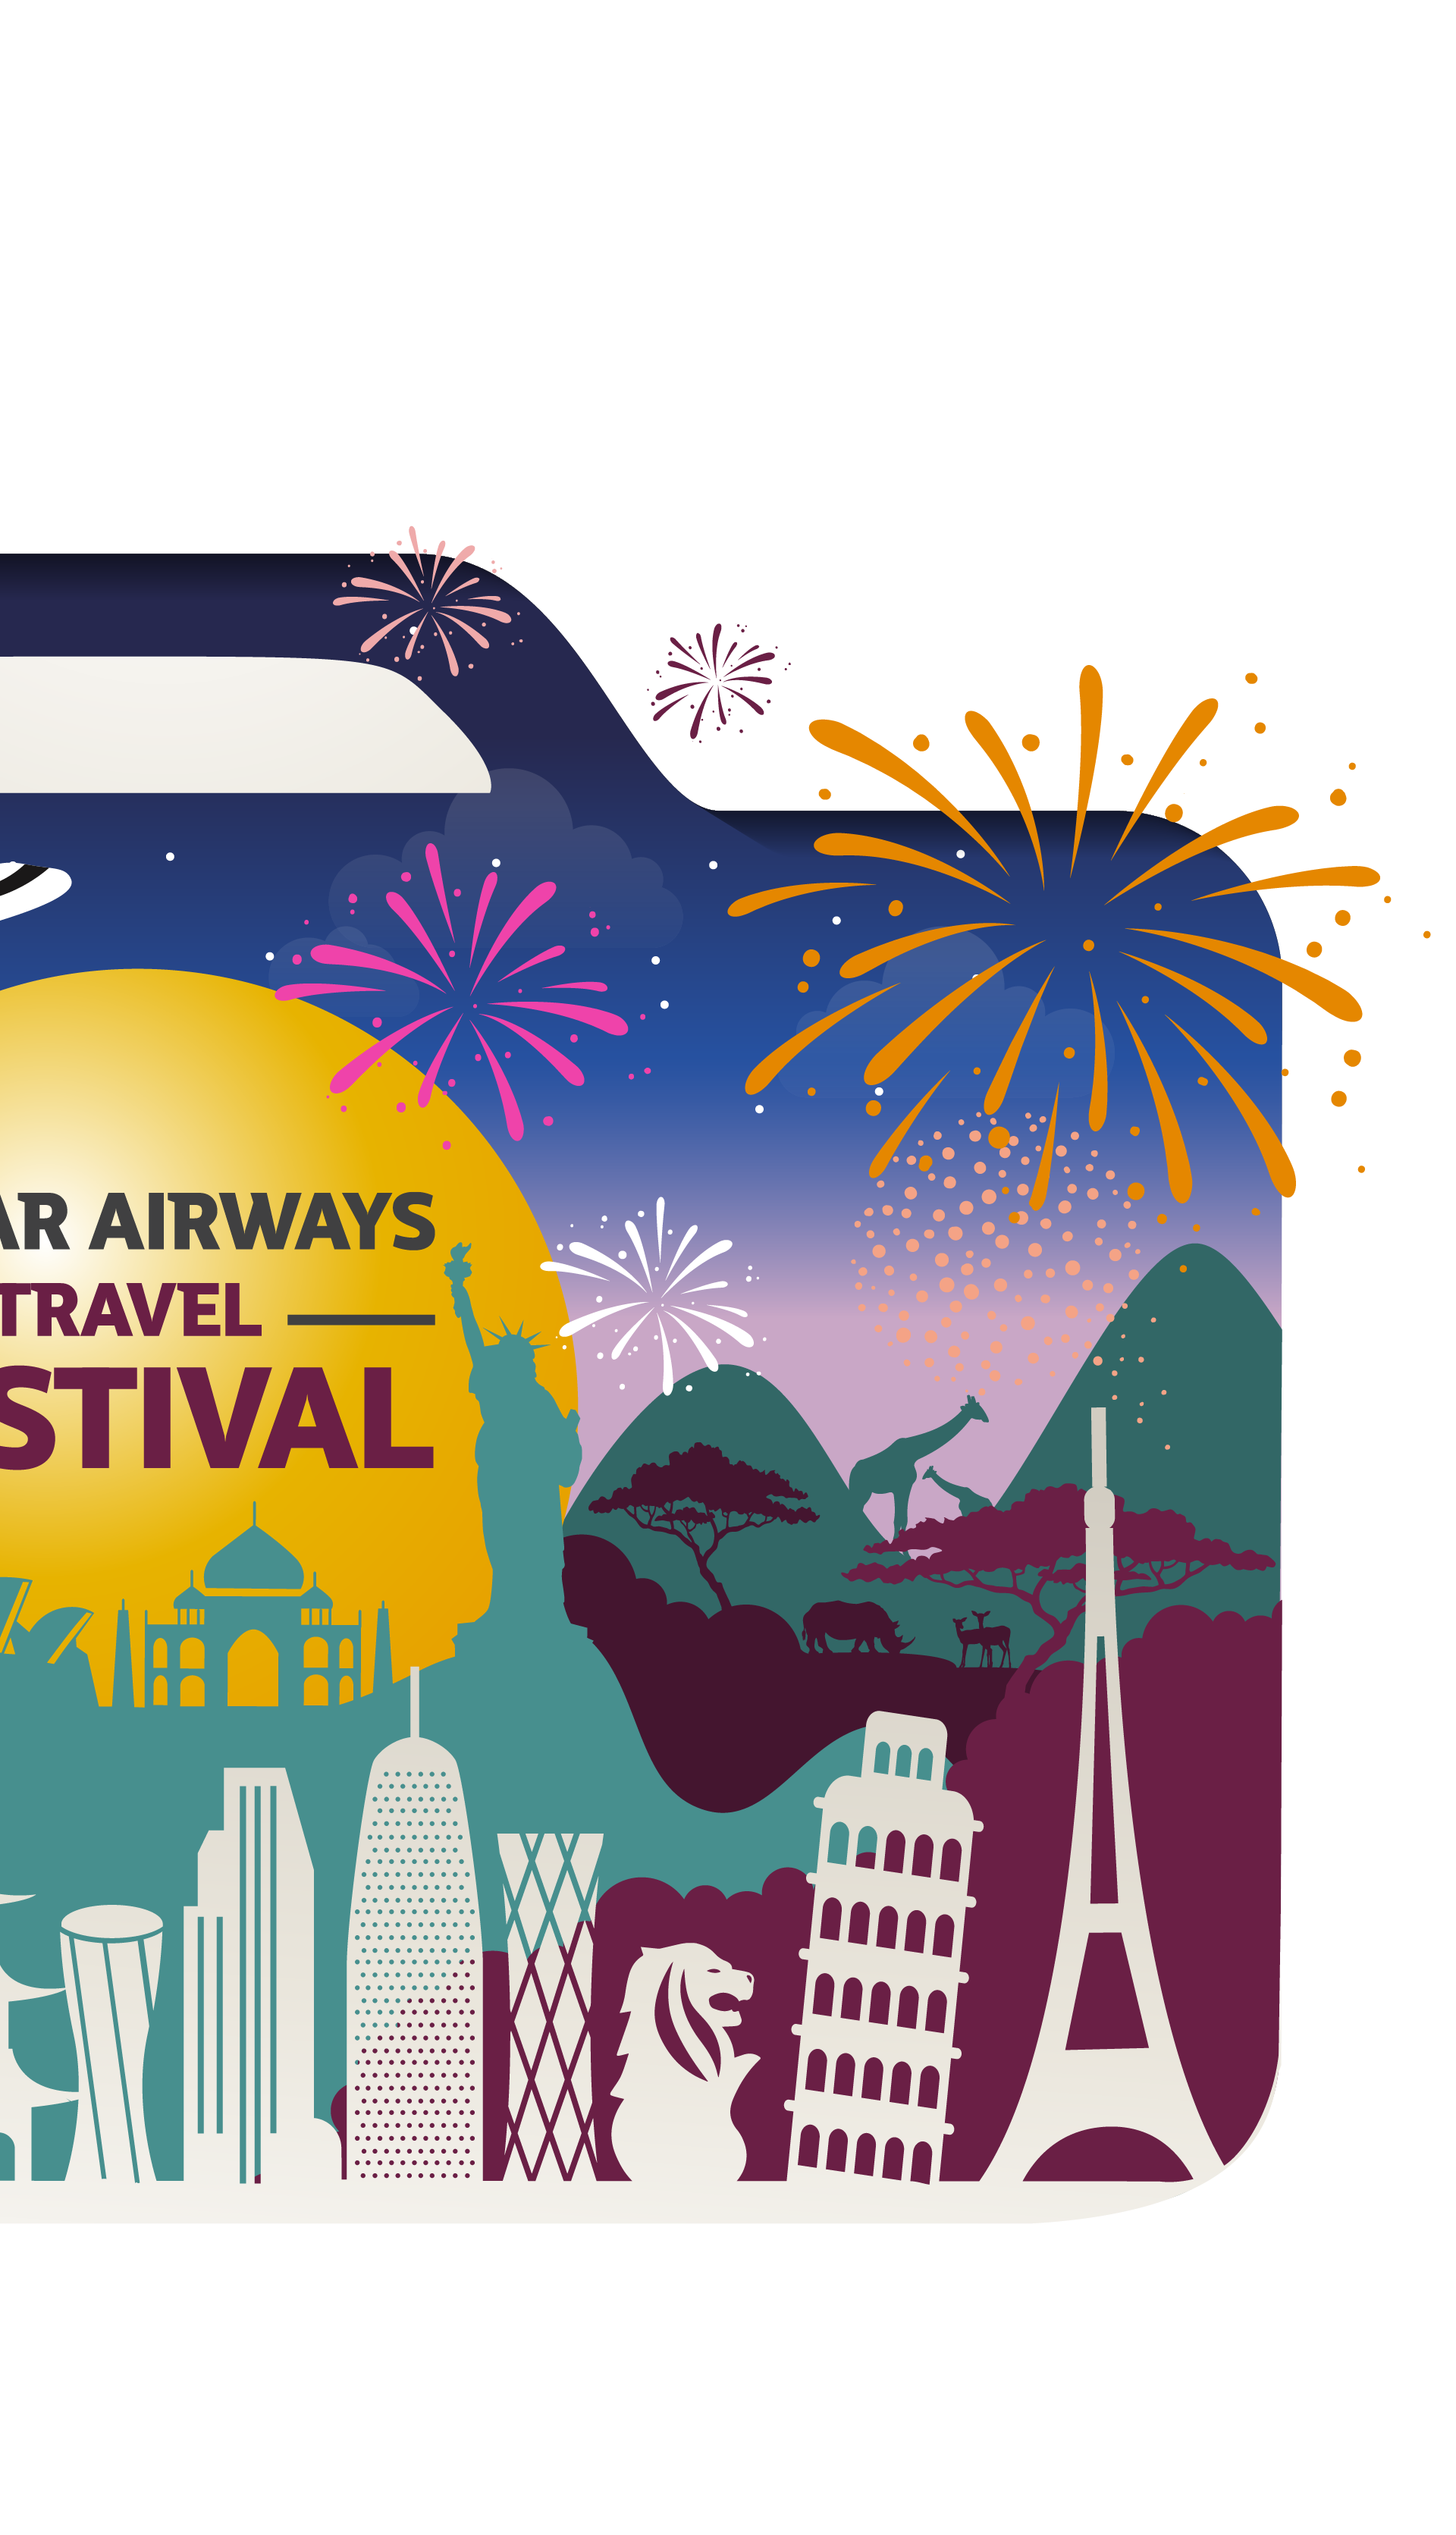 Osvojite više od 600 odličnih nagrada kroz Travel Festival